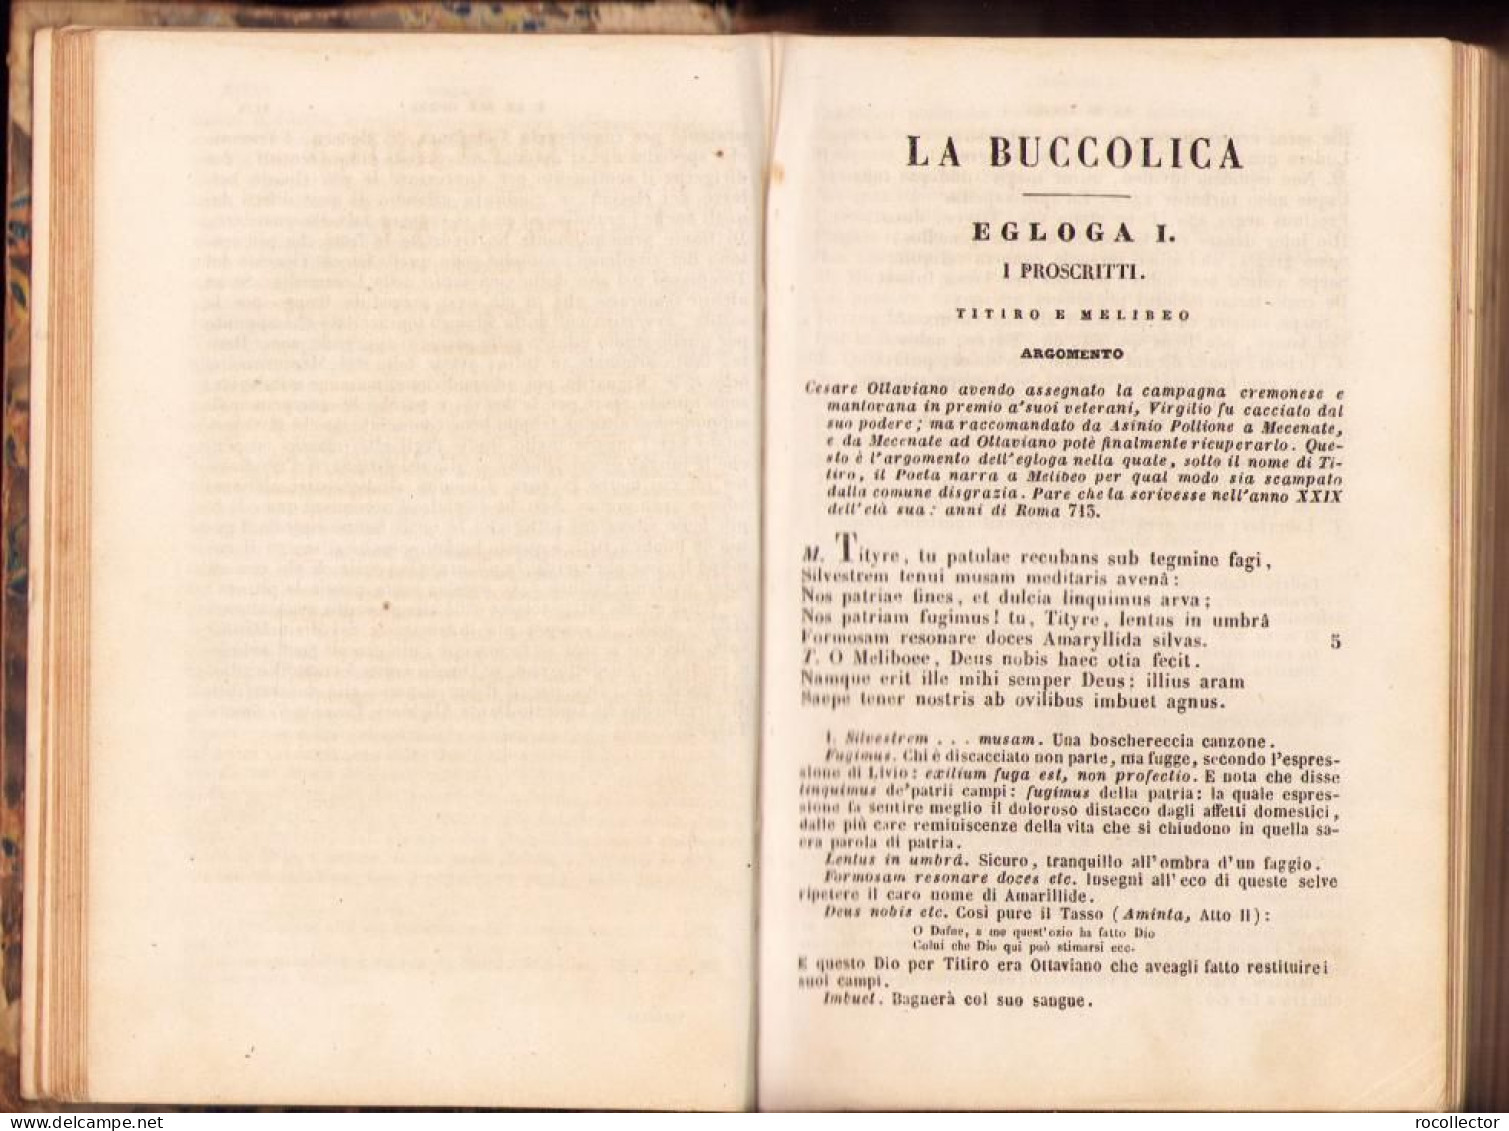 Opere Di P Virgilio Marone Con Note Italiane Di Giuseppe Arcangeli, 1866, Prato C2127 - Old Books